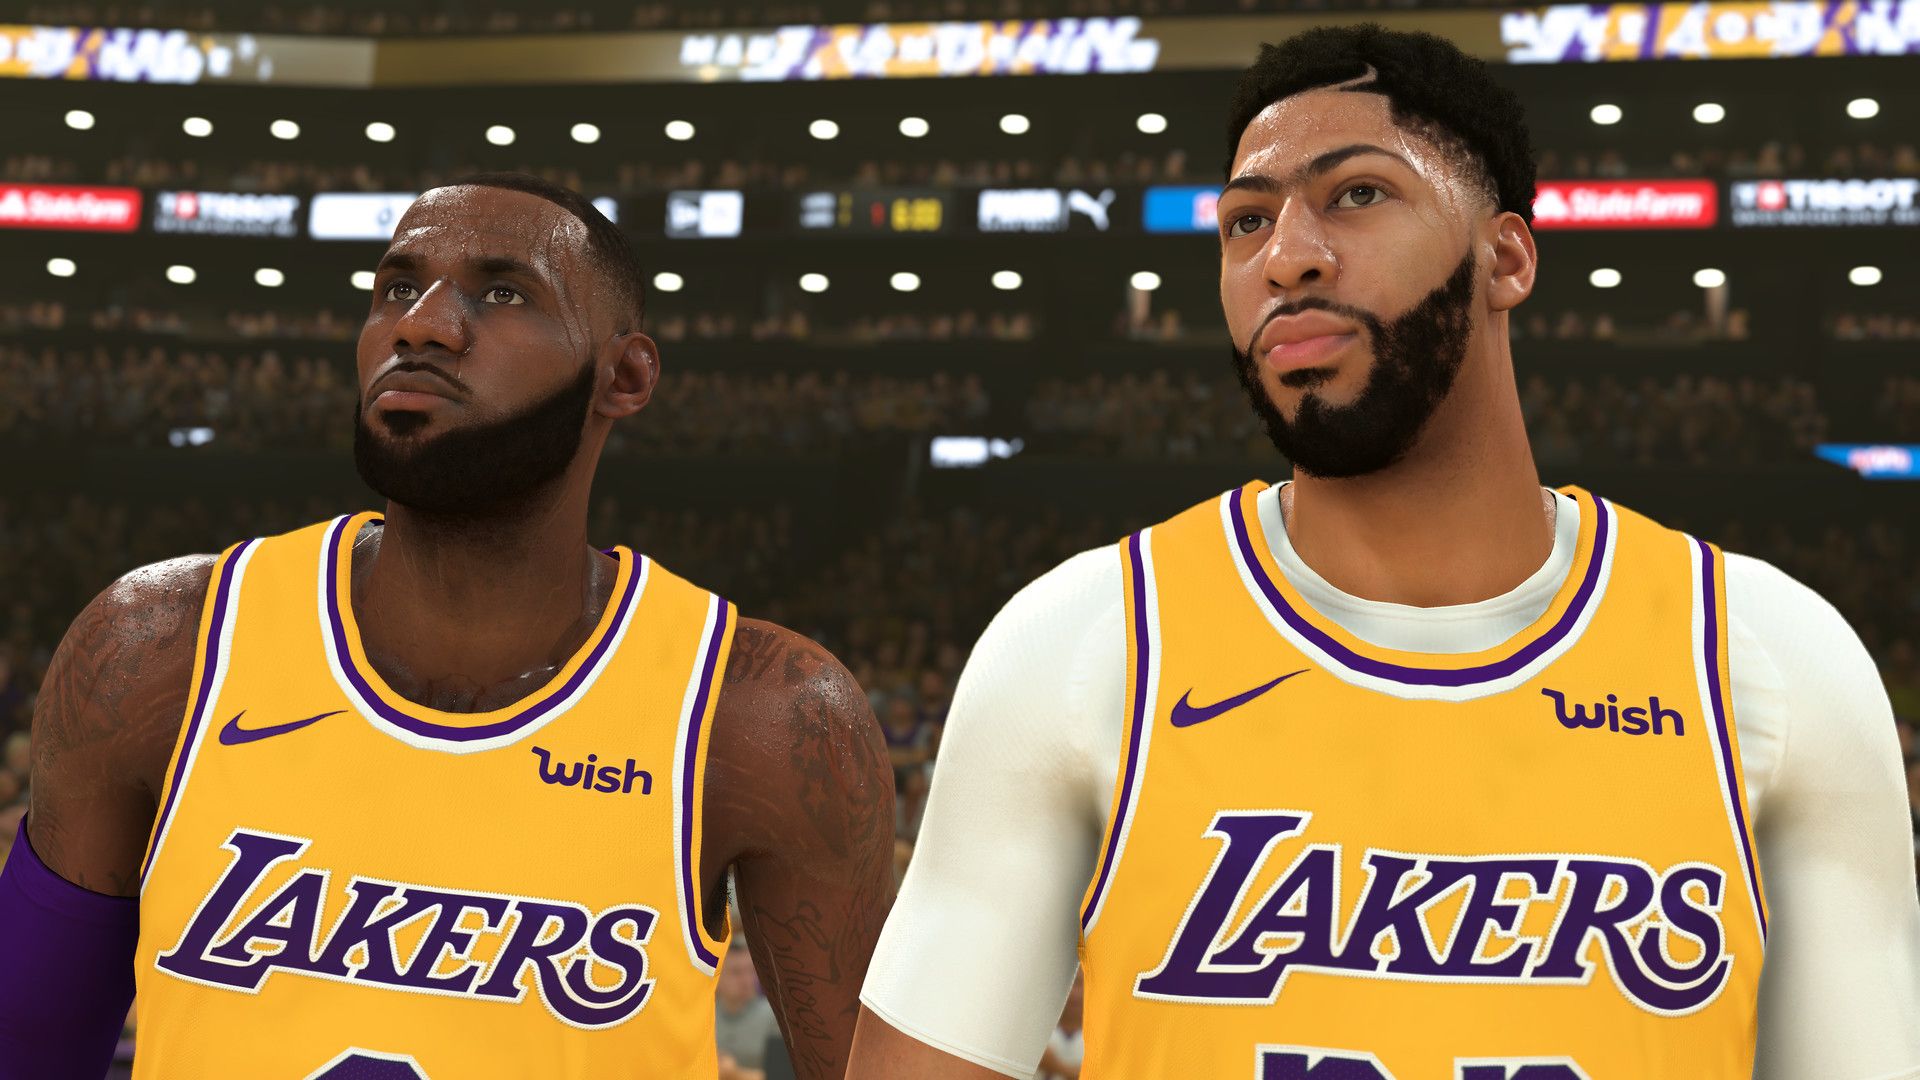 simmed seasons of NBA 2K20: Beat L.A.? No way - 2K loves the Lakers